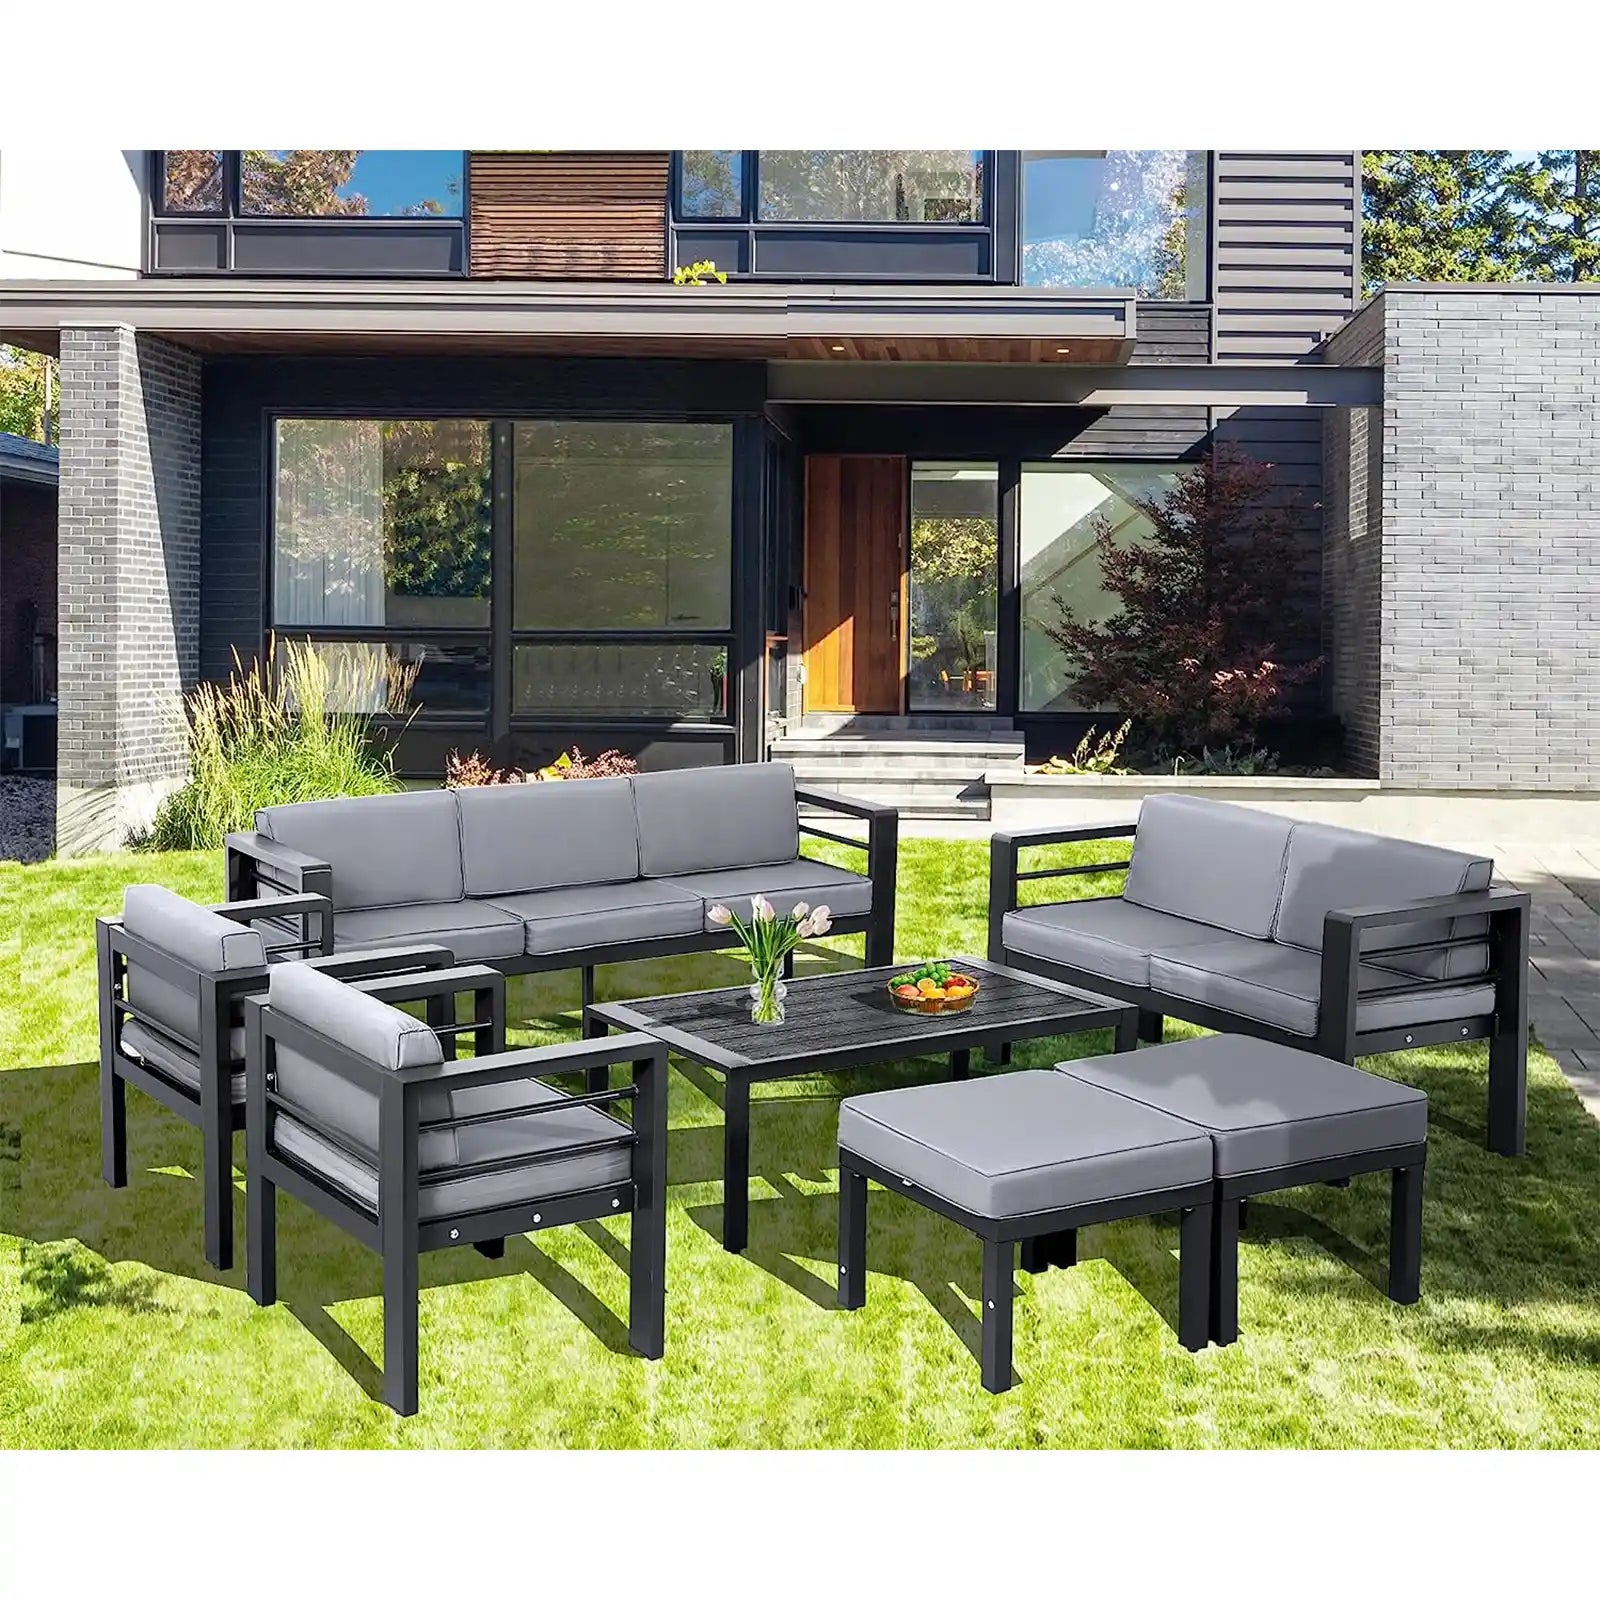 Juego de muebles de patio de aluminio de gran tamaño, 7 piezas, moderno sofá seccional para exteriores, para todo tipo de clima, juego de conversación con cómodos cojines grises, otomanas y mesa 